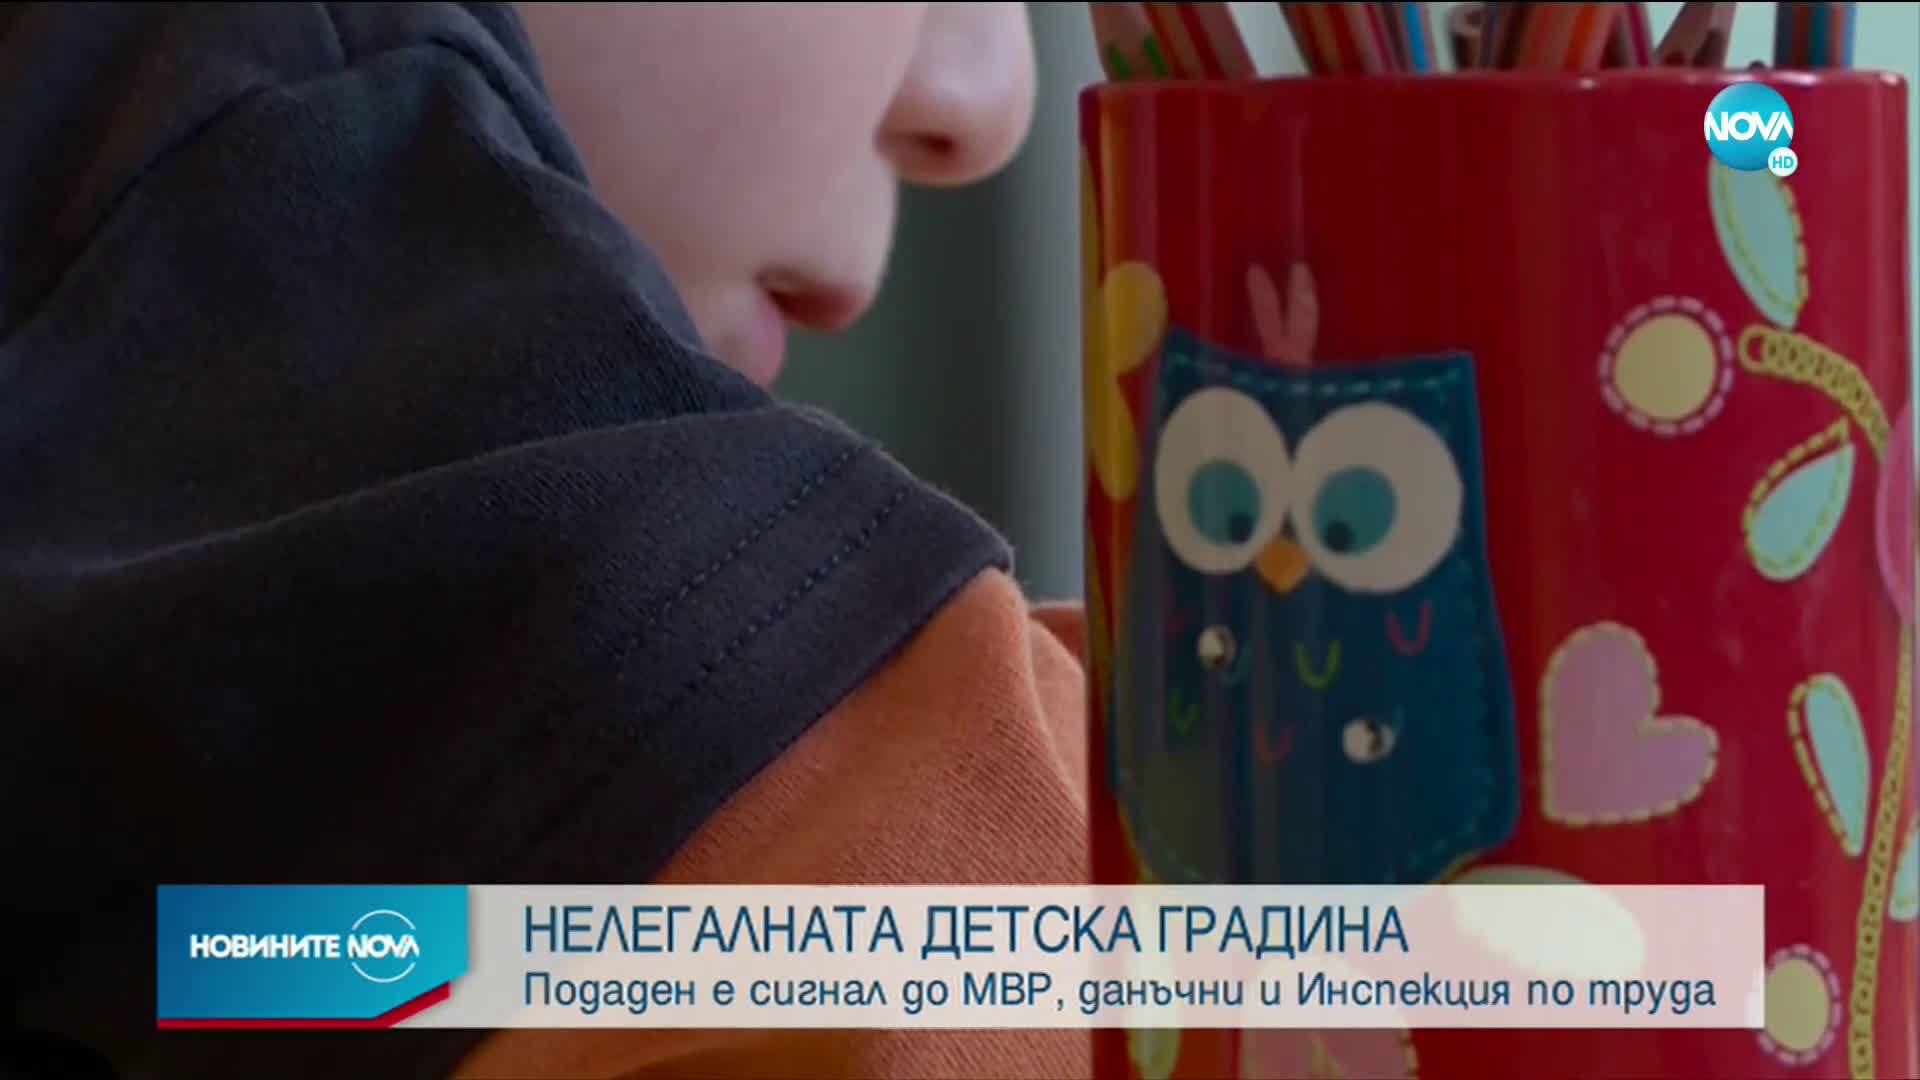 СЛЕД СИГНАЛ ЗА НАСИЛИЕ: Проверяват частна детска градина в София